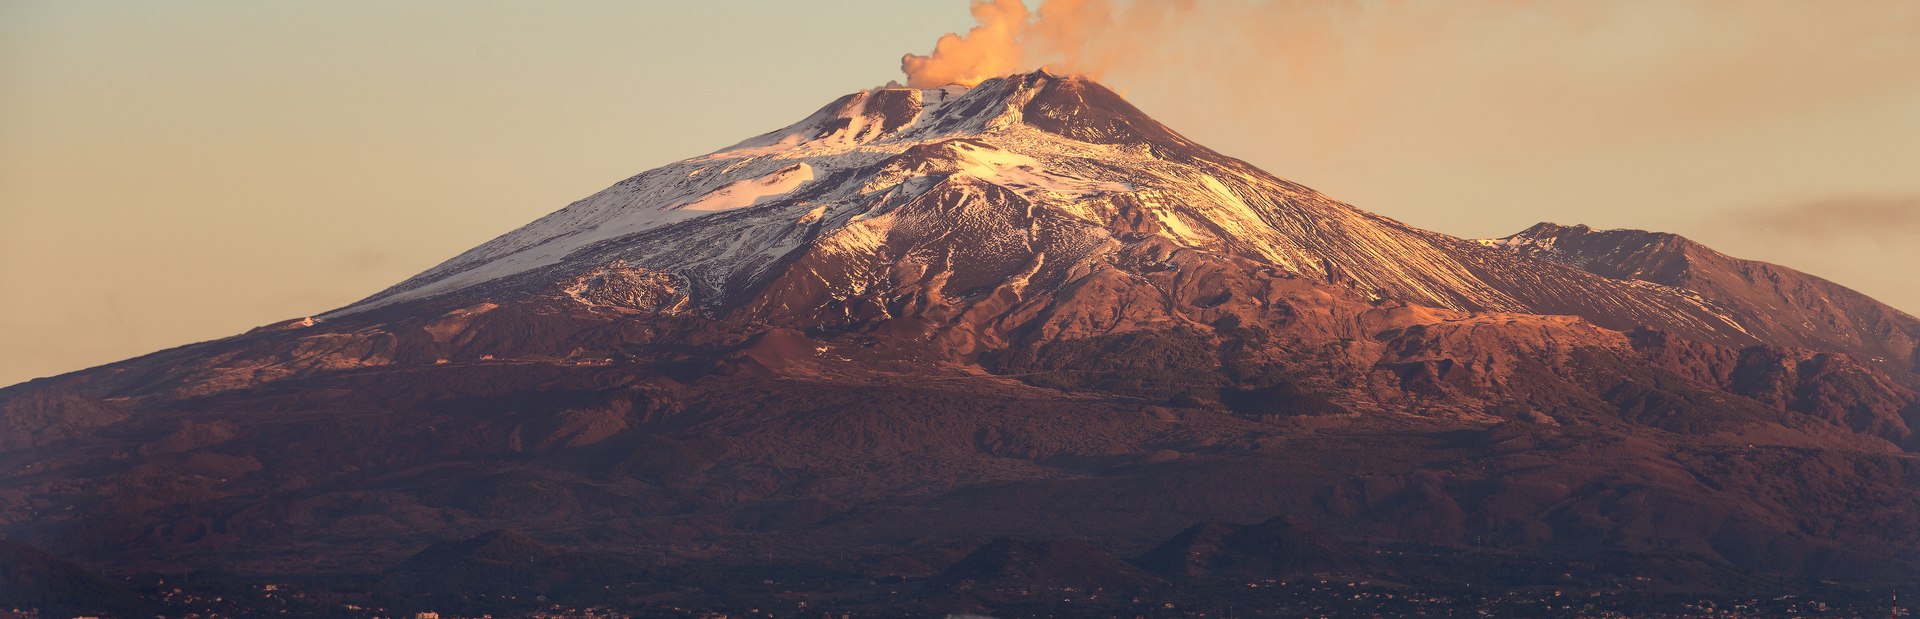 Mount Etna Image 1